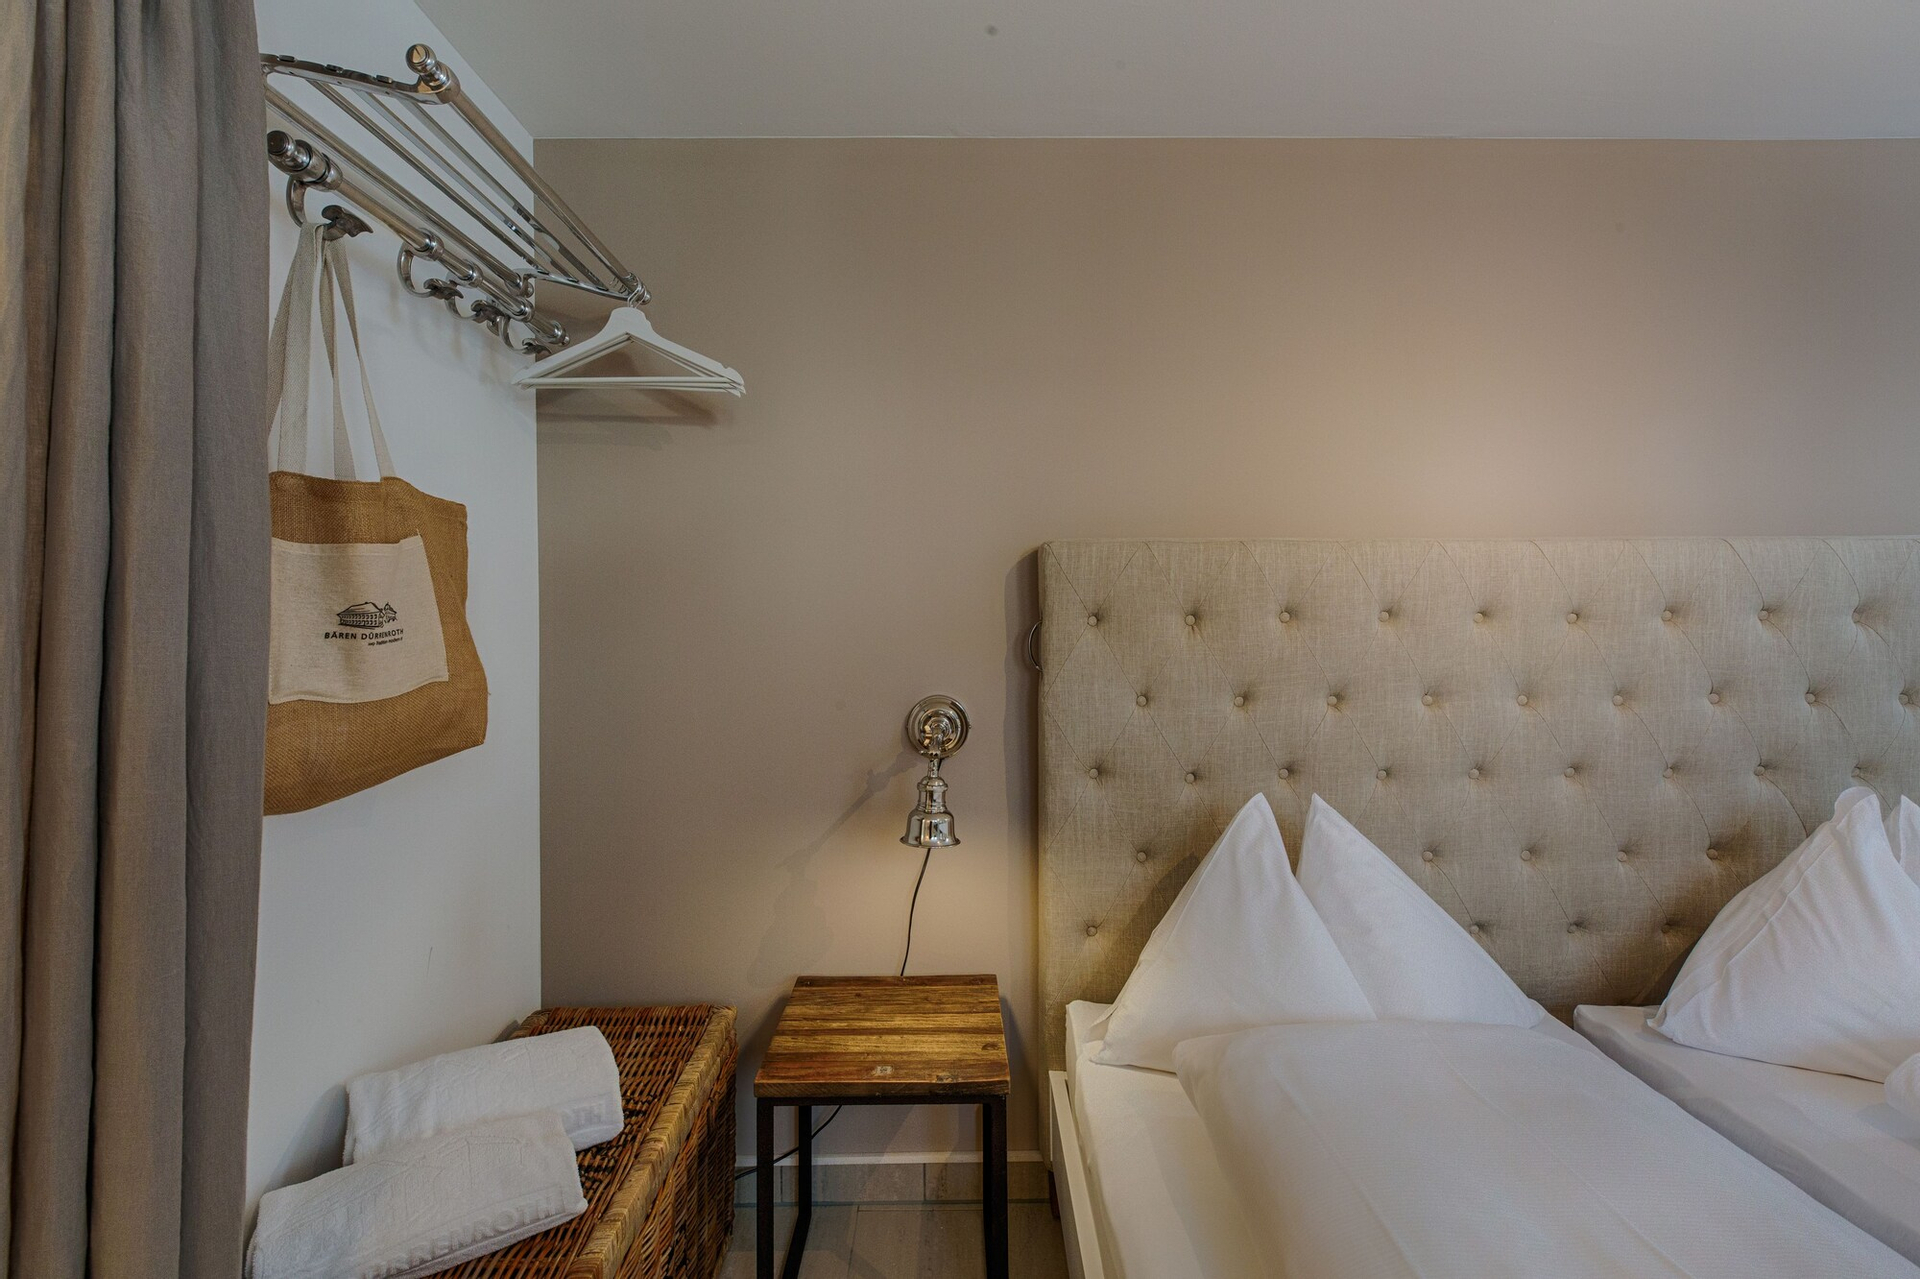 Bedroom 4, Romantik Hotel Bären, Trachselwald